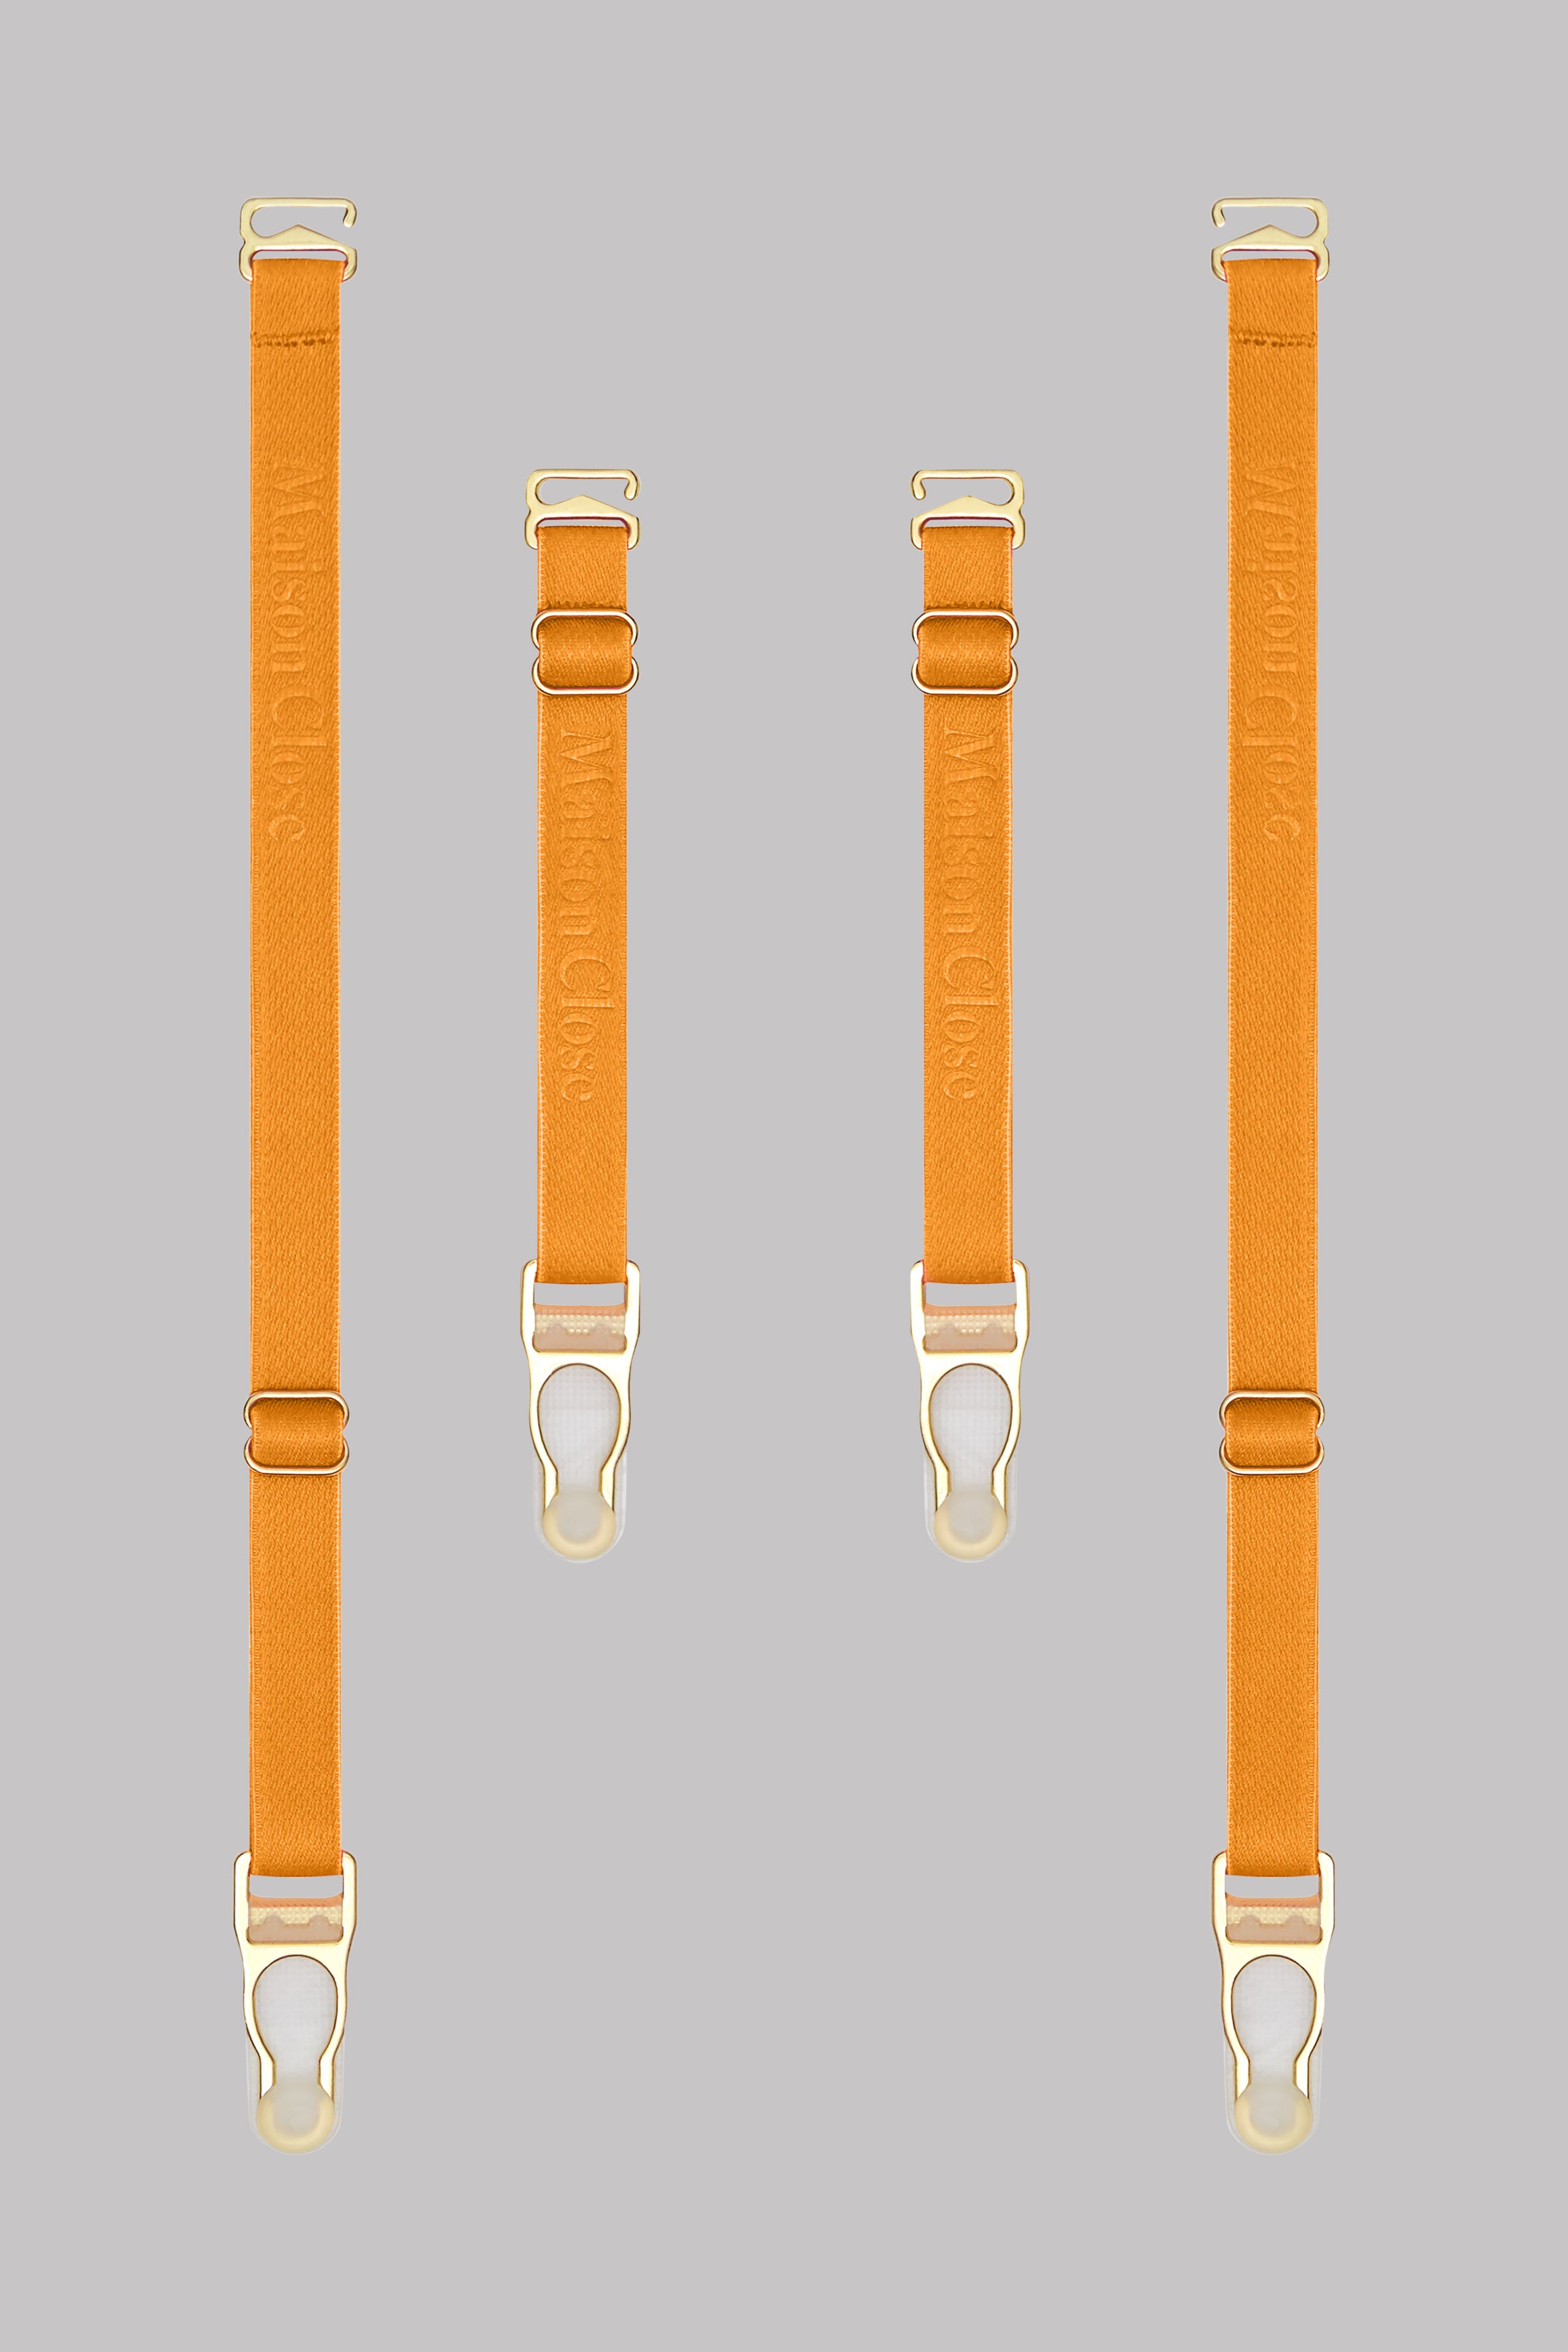 Suspenders straps - Signature - Neon Orange/Gold - 4 pieces